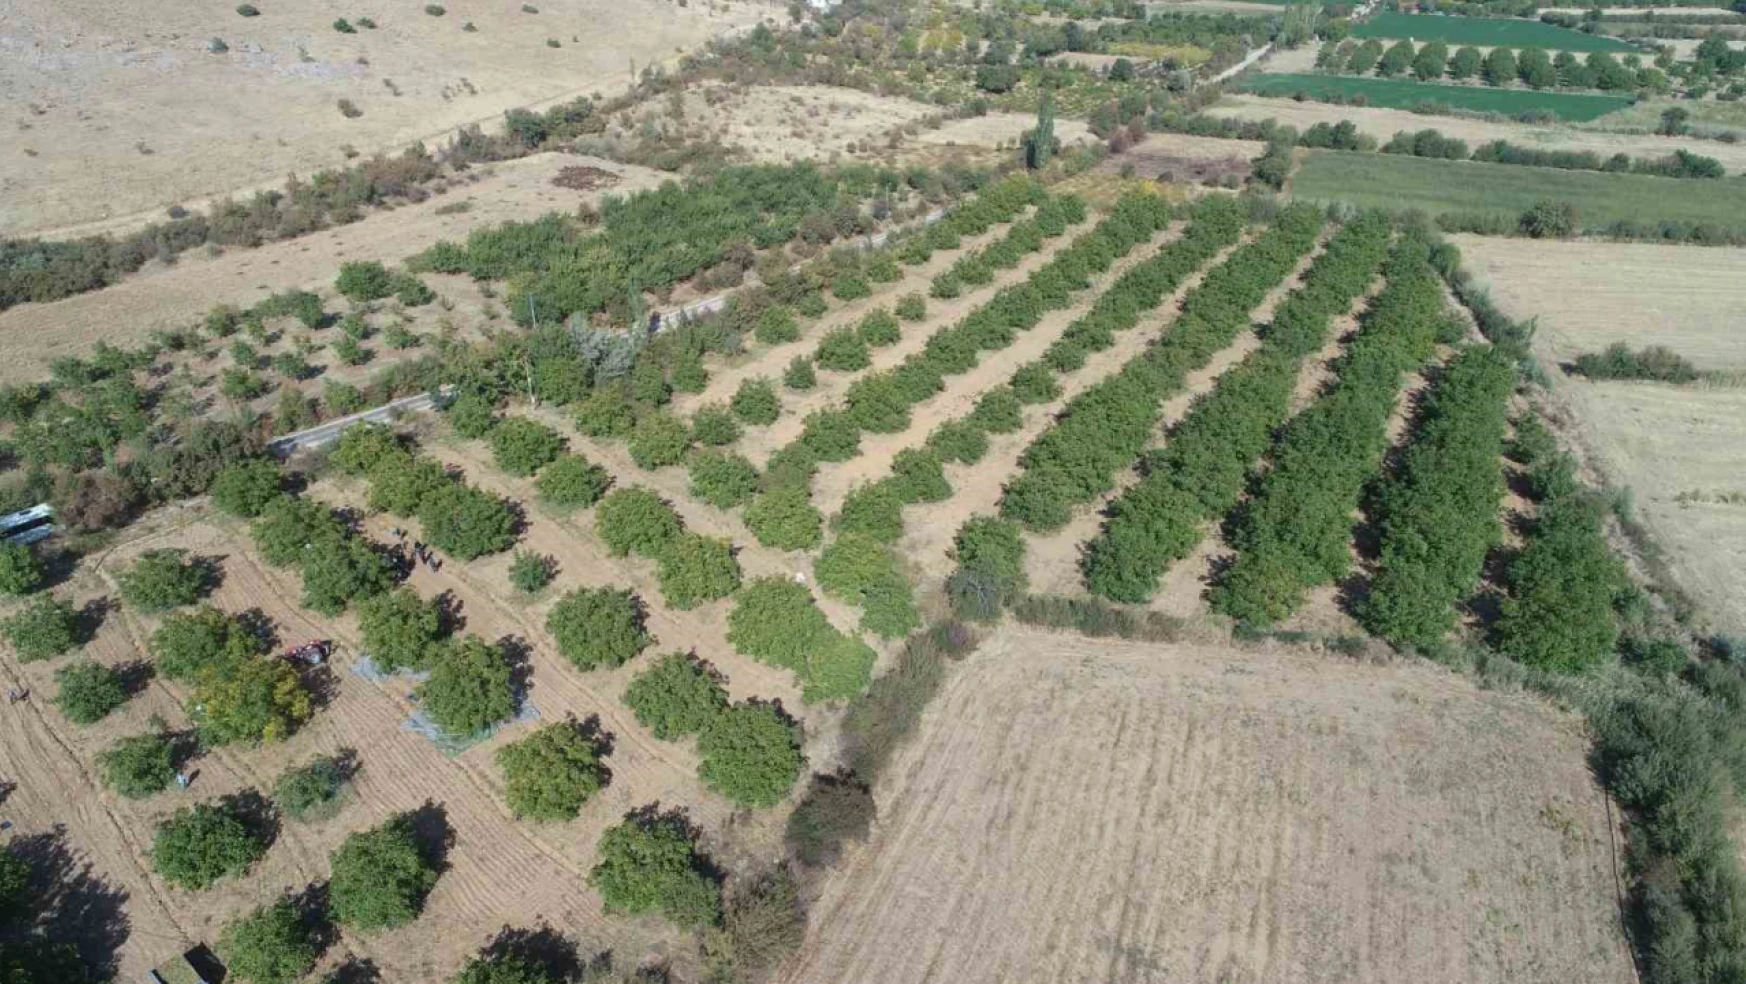 Elazığ'da 125 bin ceviz ağacında hasat başladı